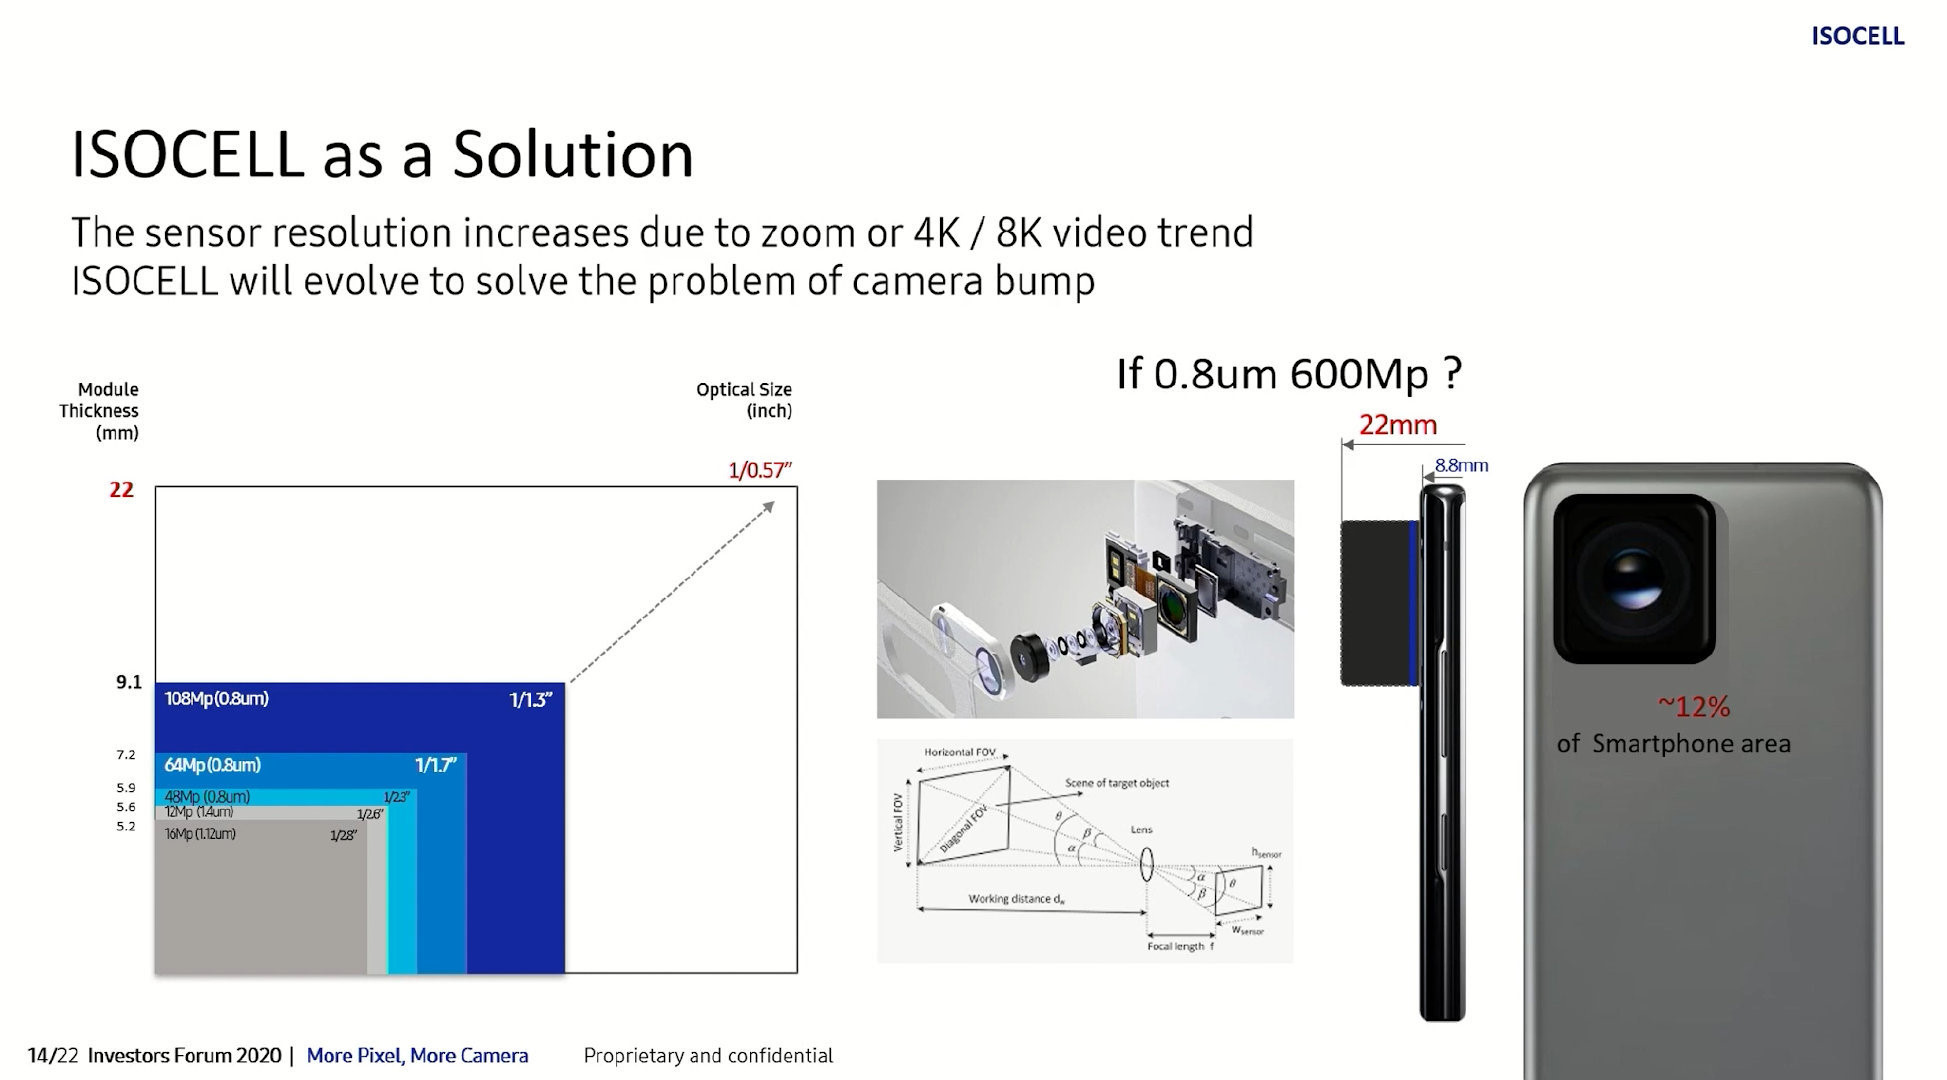 Samsung'un sunumlarındaki görselde 600 MP'lik sensörün bazı teknik ayrıntıları yer alıyor. 